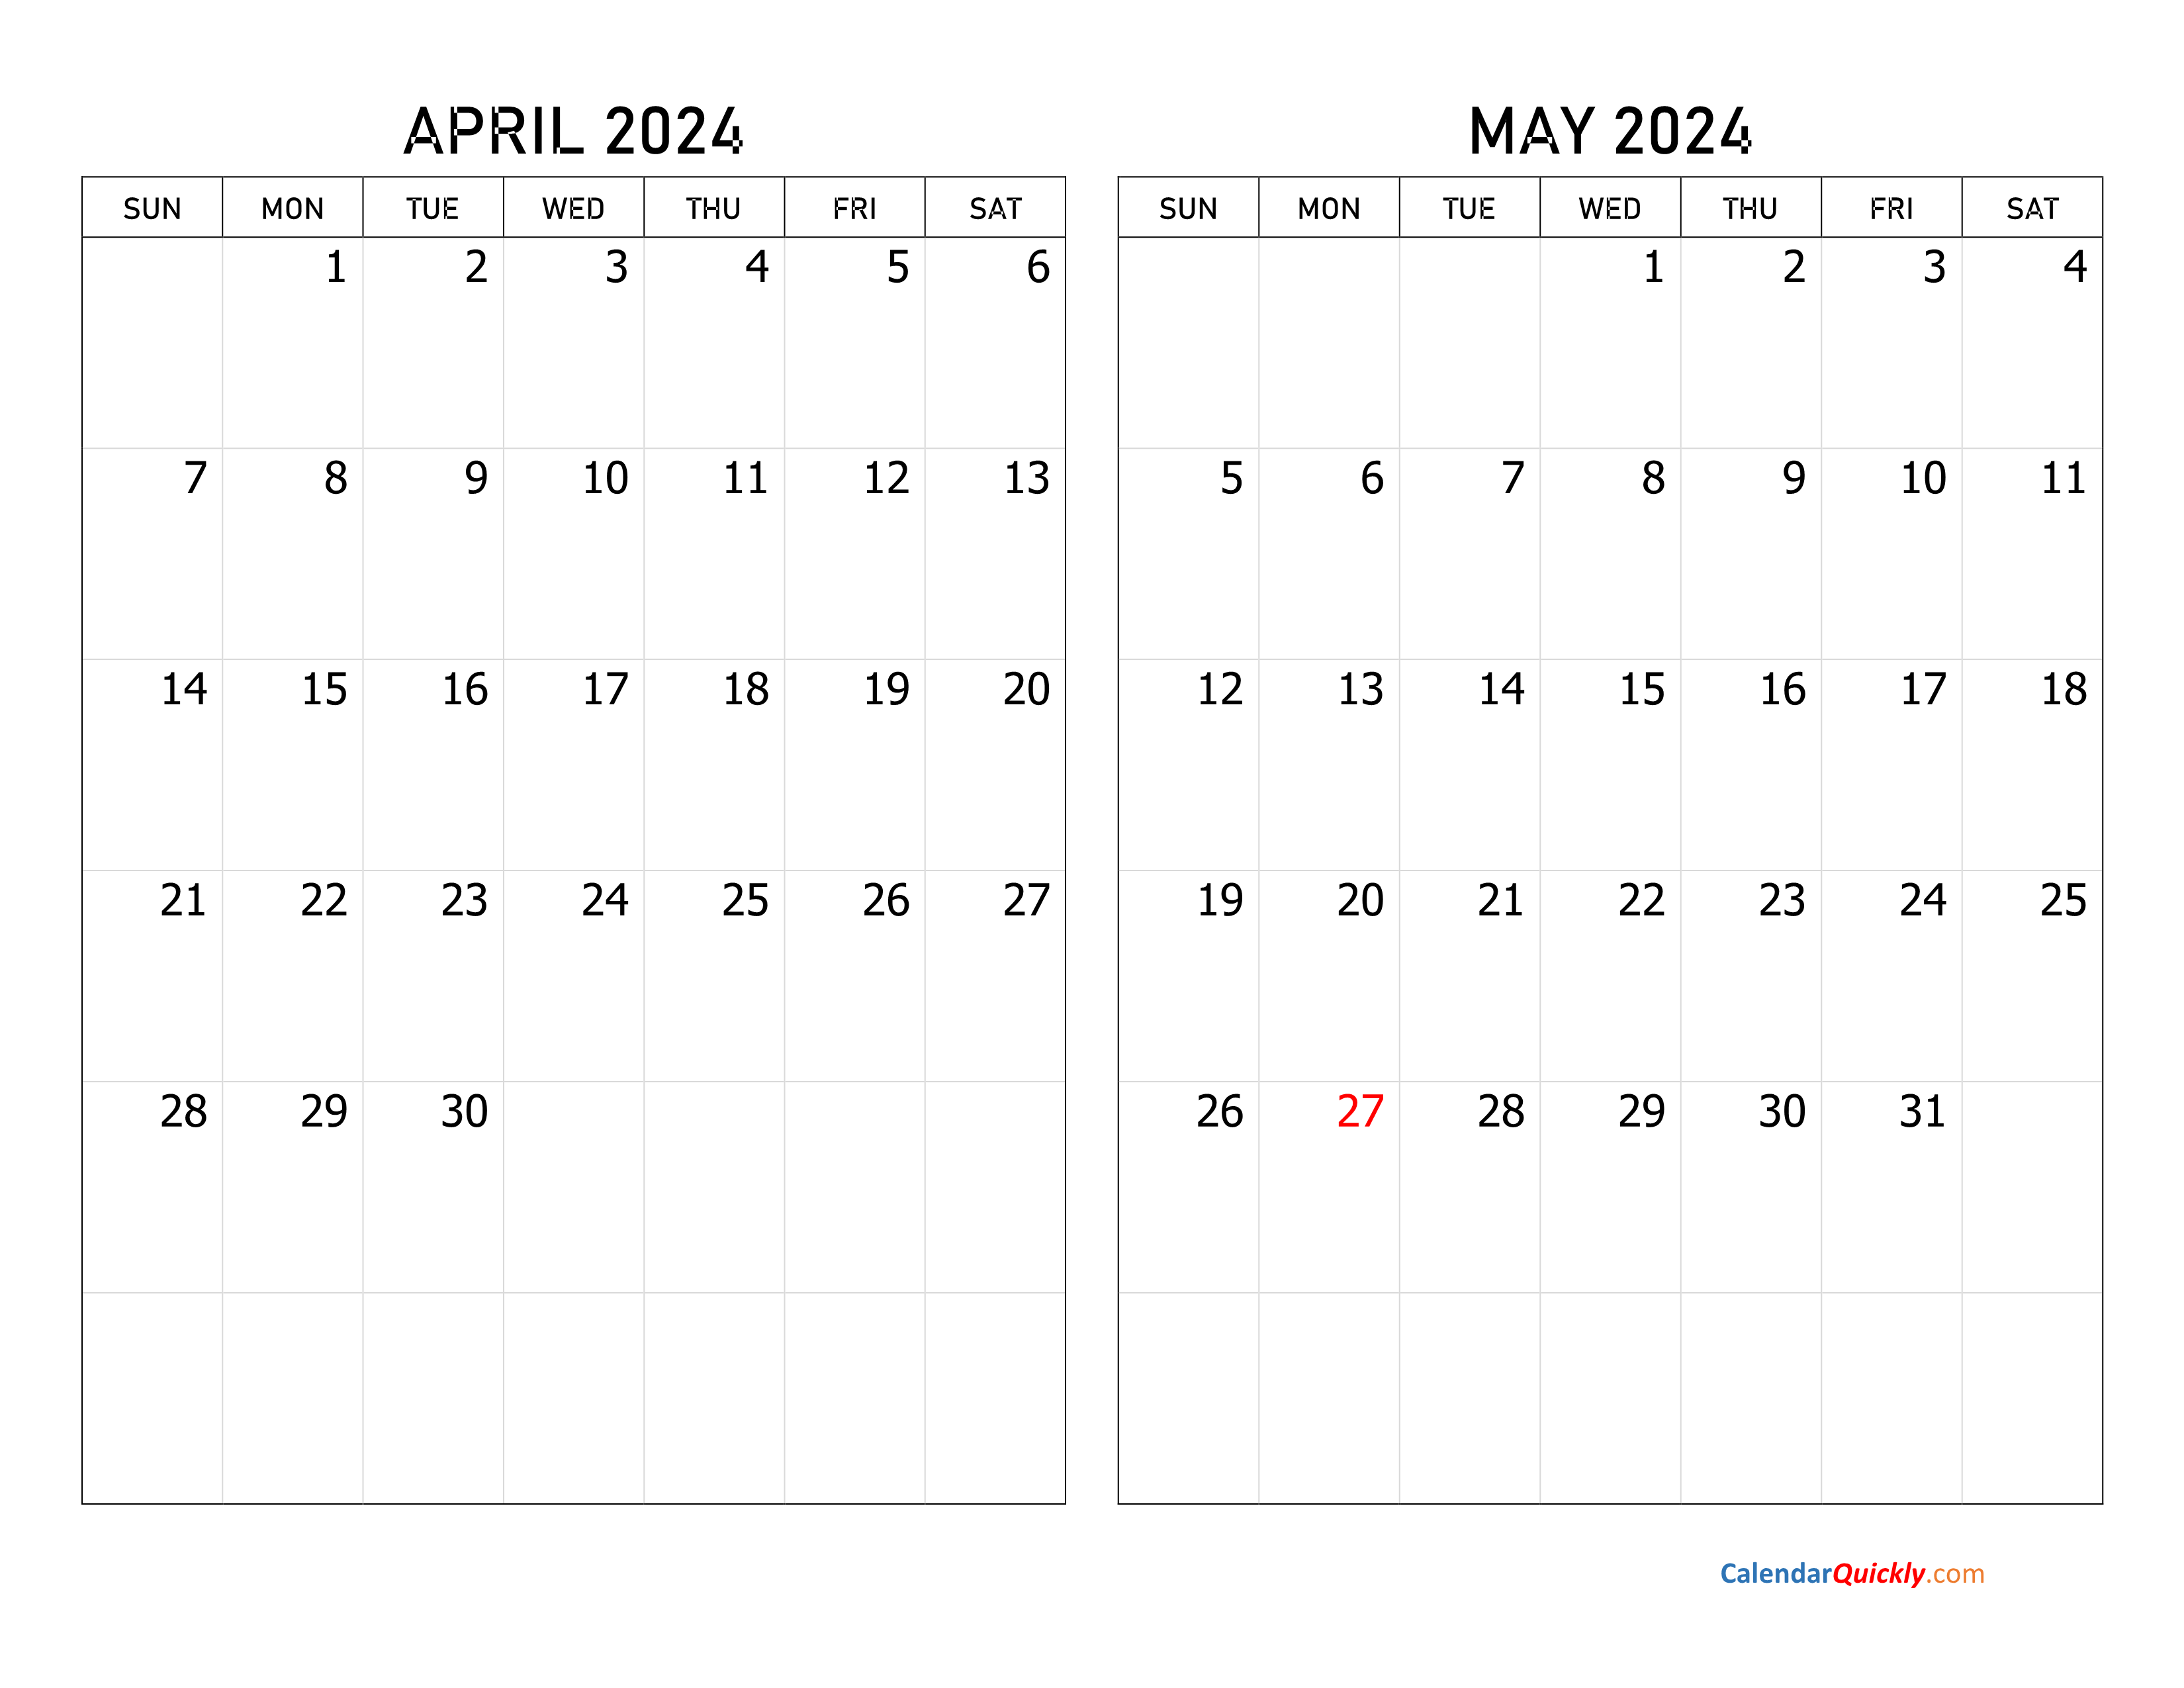 april and may 2024 calendar calendar quickly - april and may 2024 calendar calendar quickly 